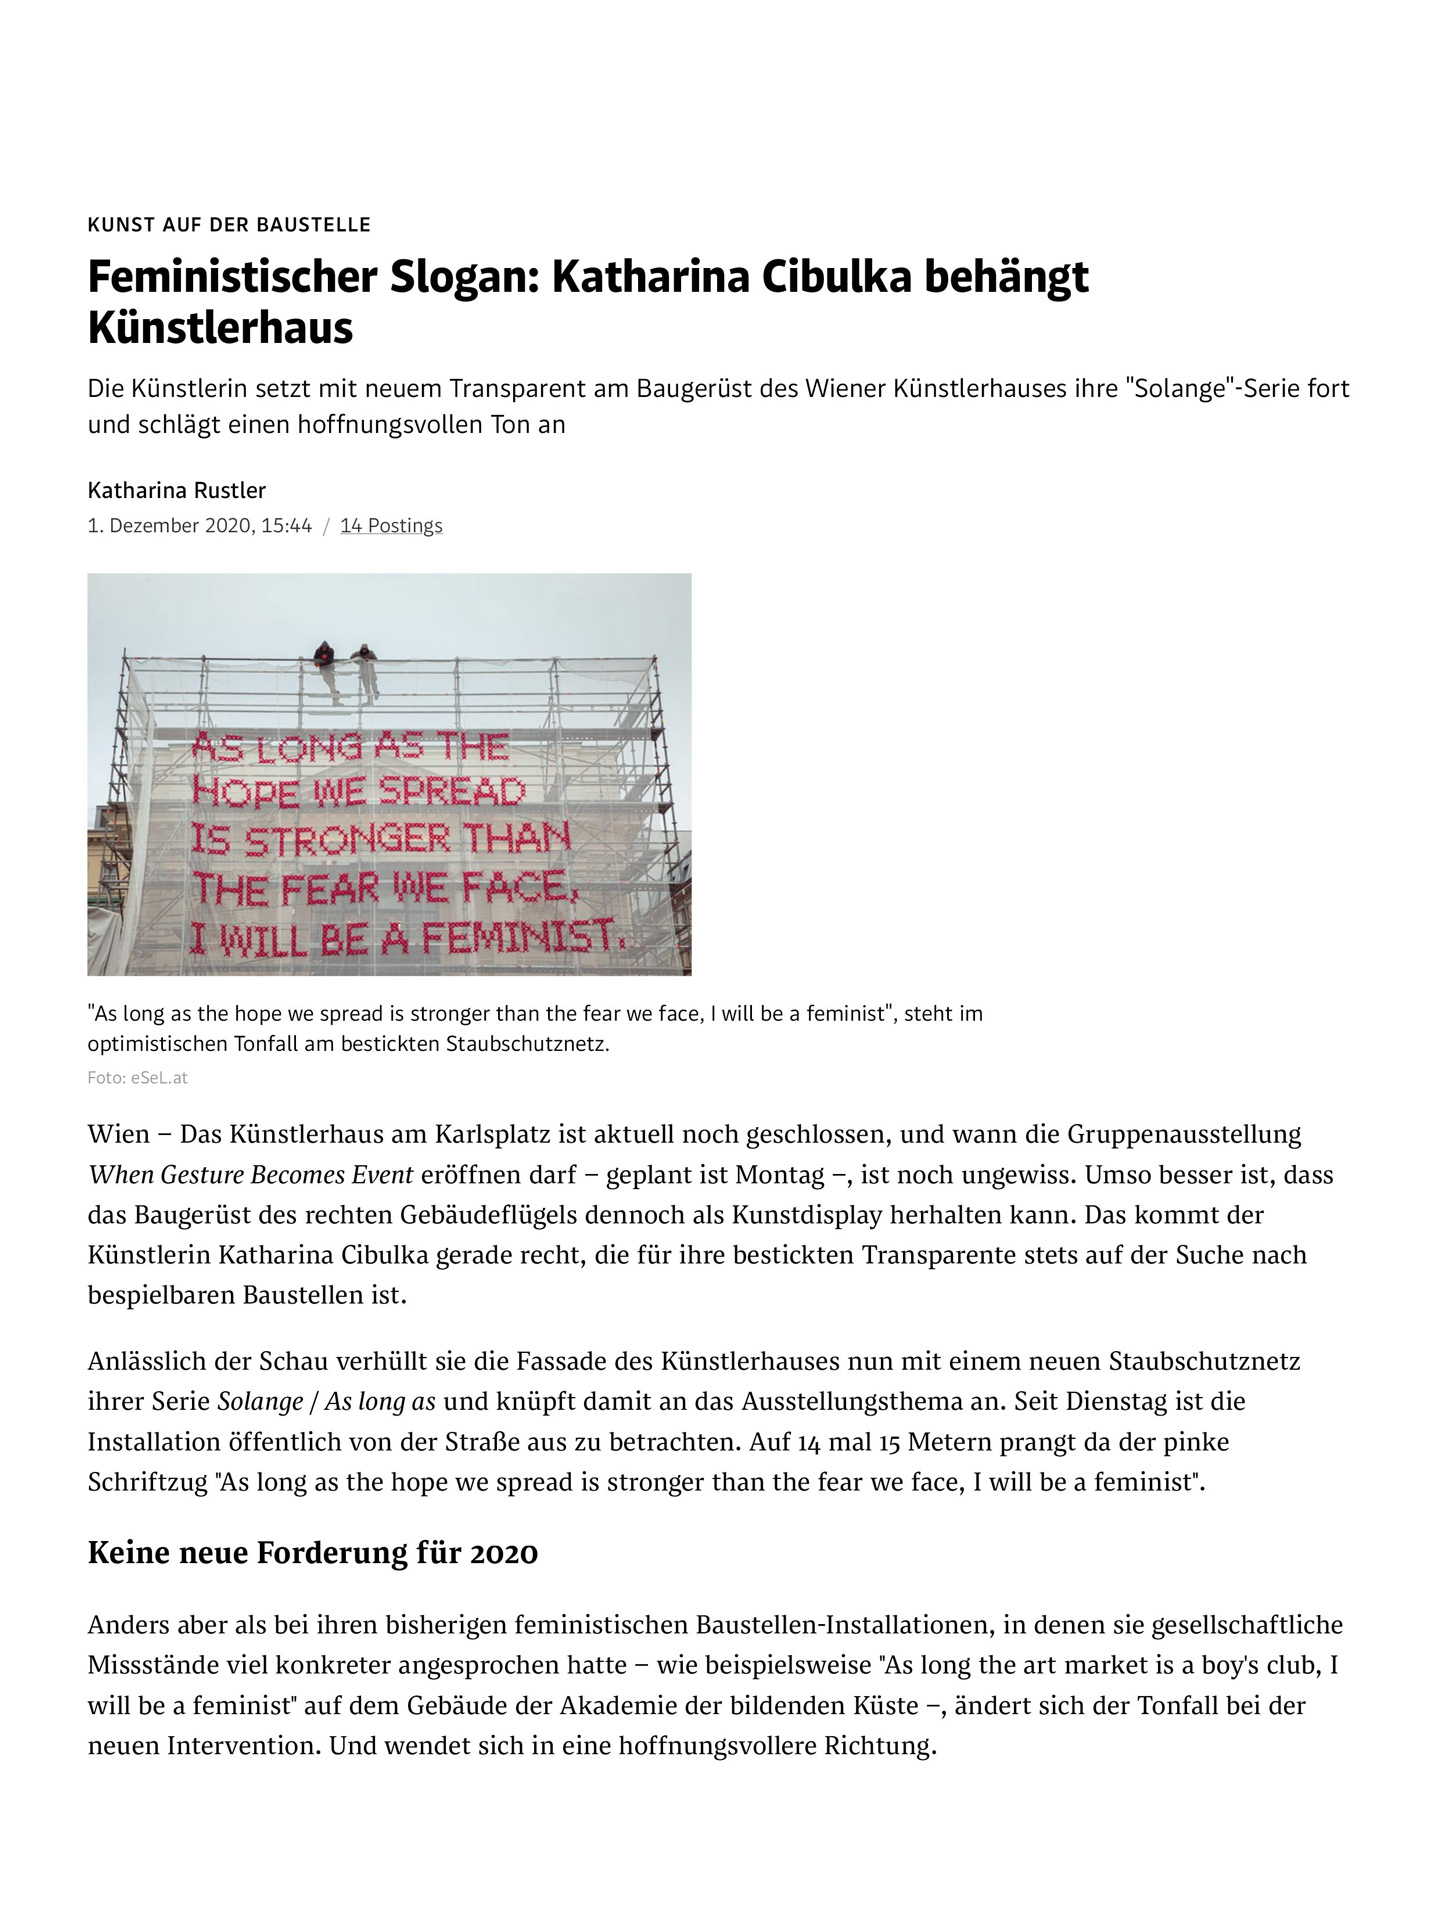 Der Standard – 01/12/20 Feministischer Slogan Katharina Cibulka behängt Künstlerhaus